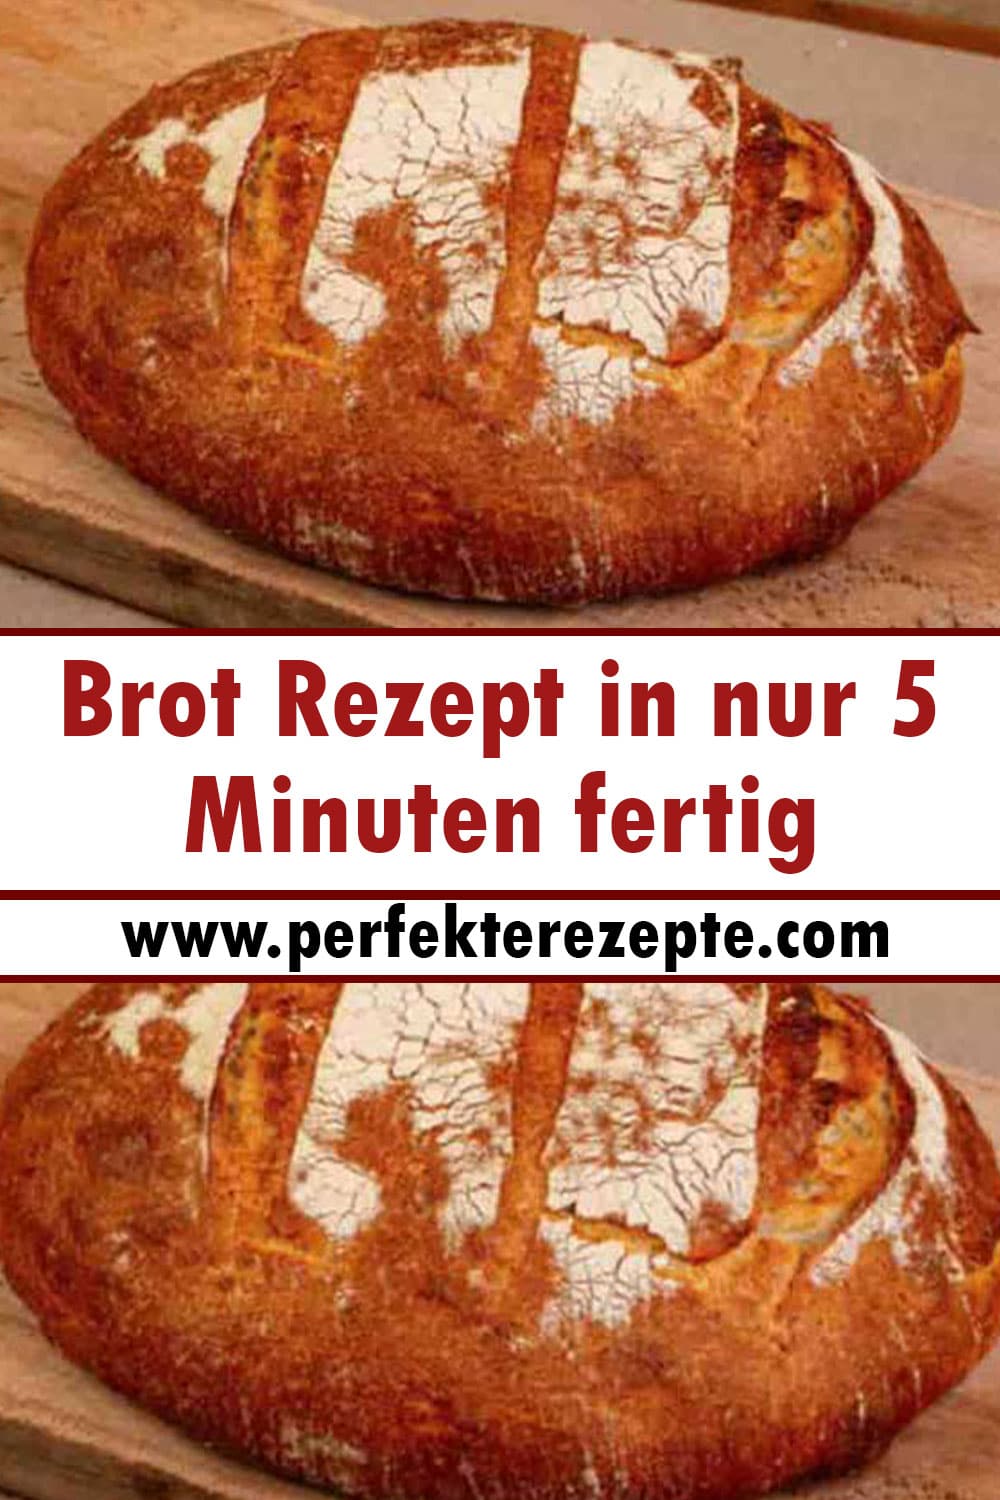 Brot Rezept in nur 5 Minuten fertig